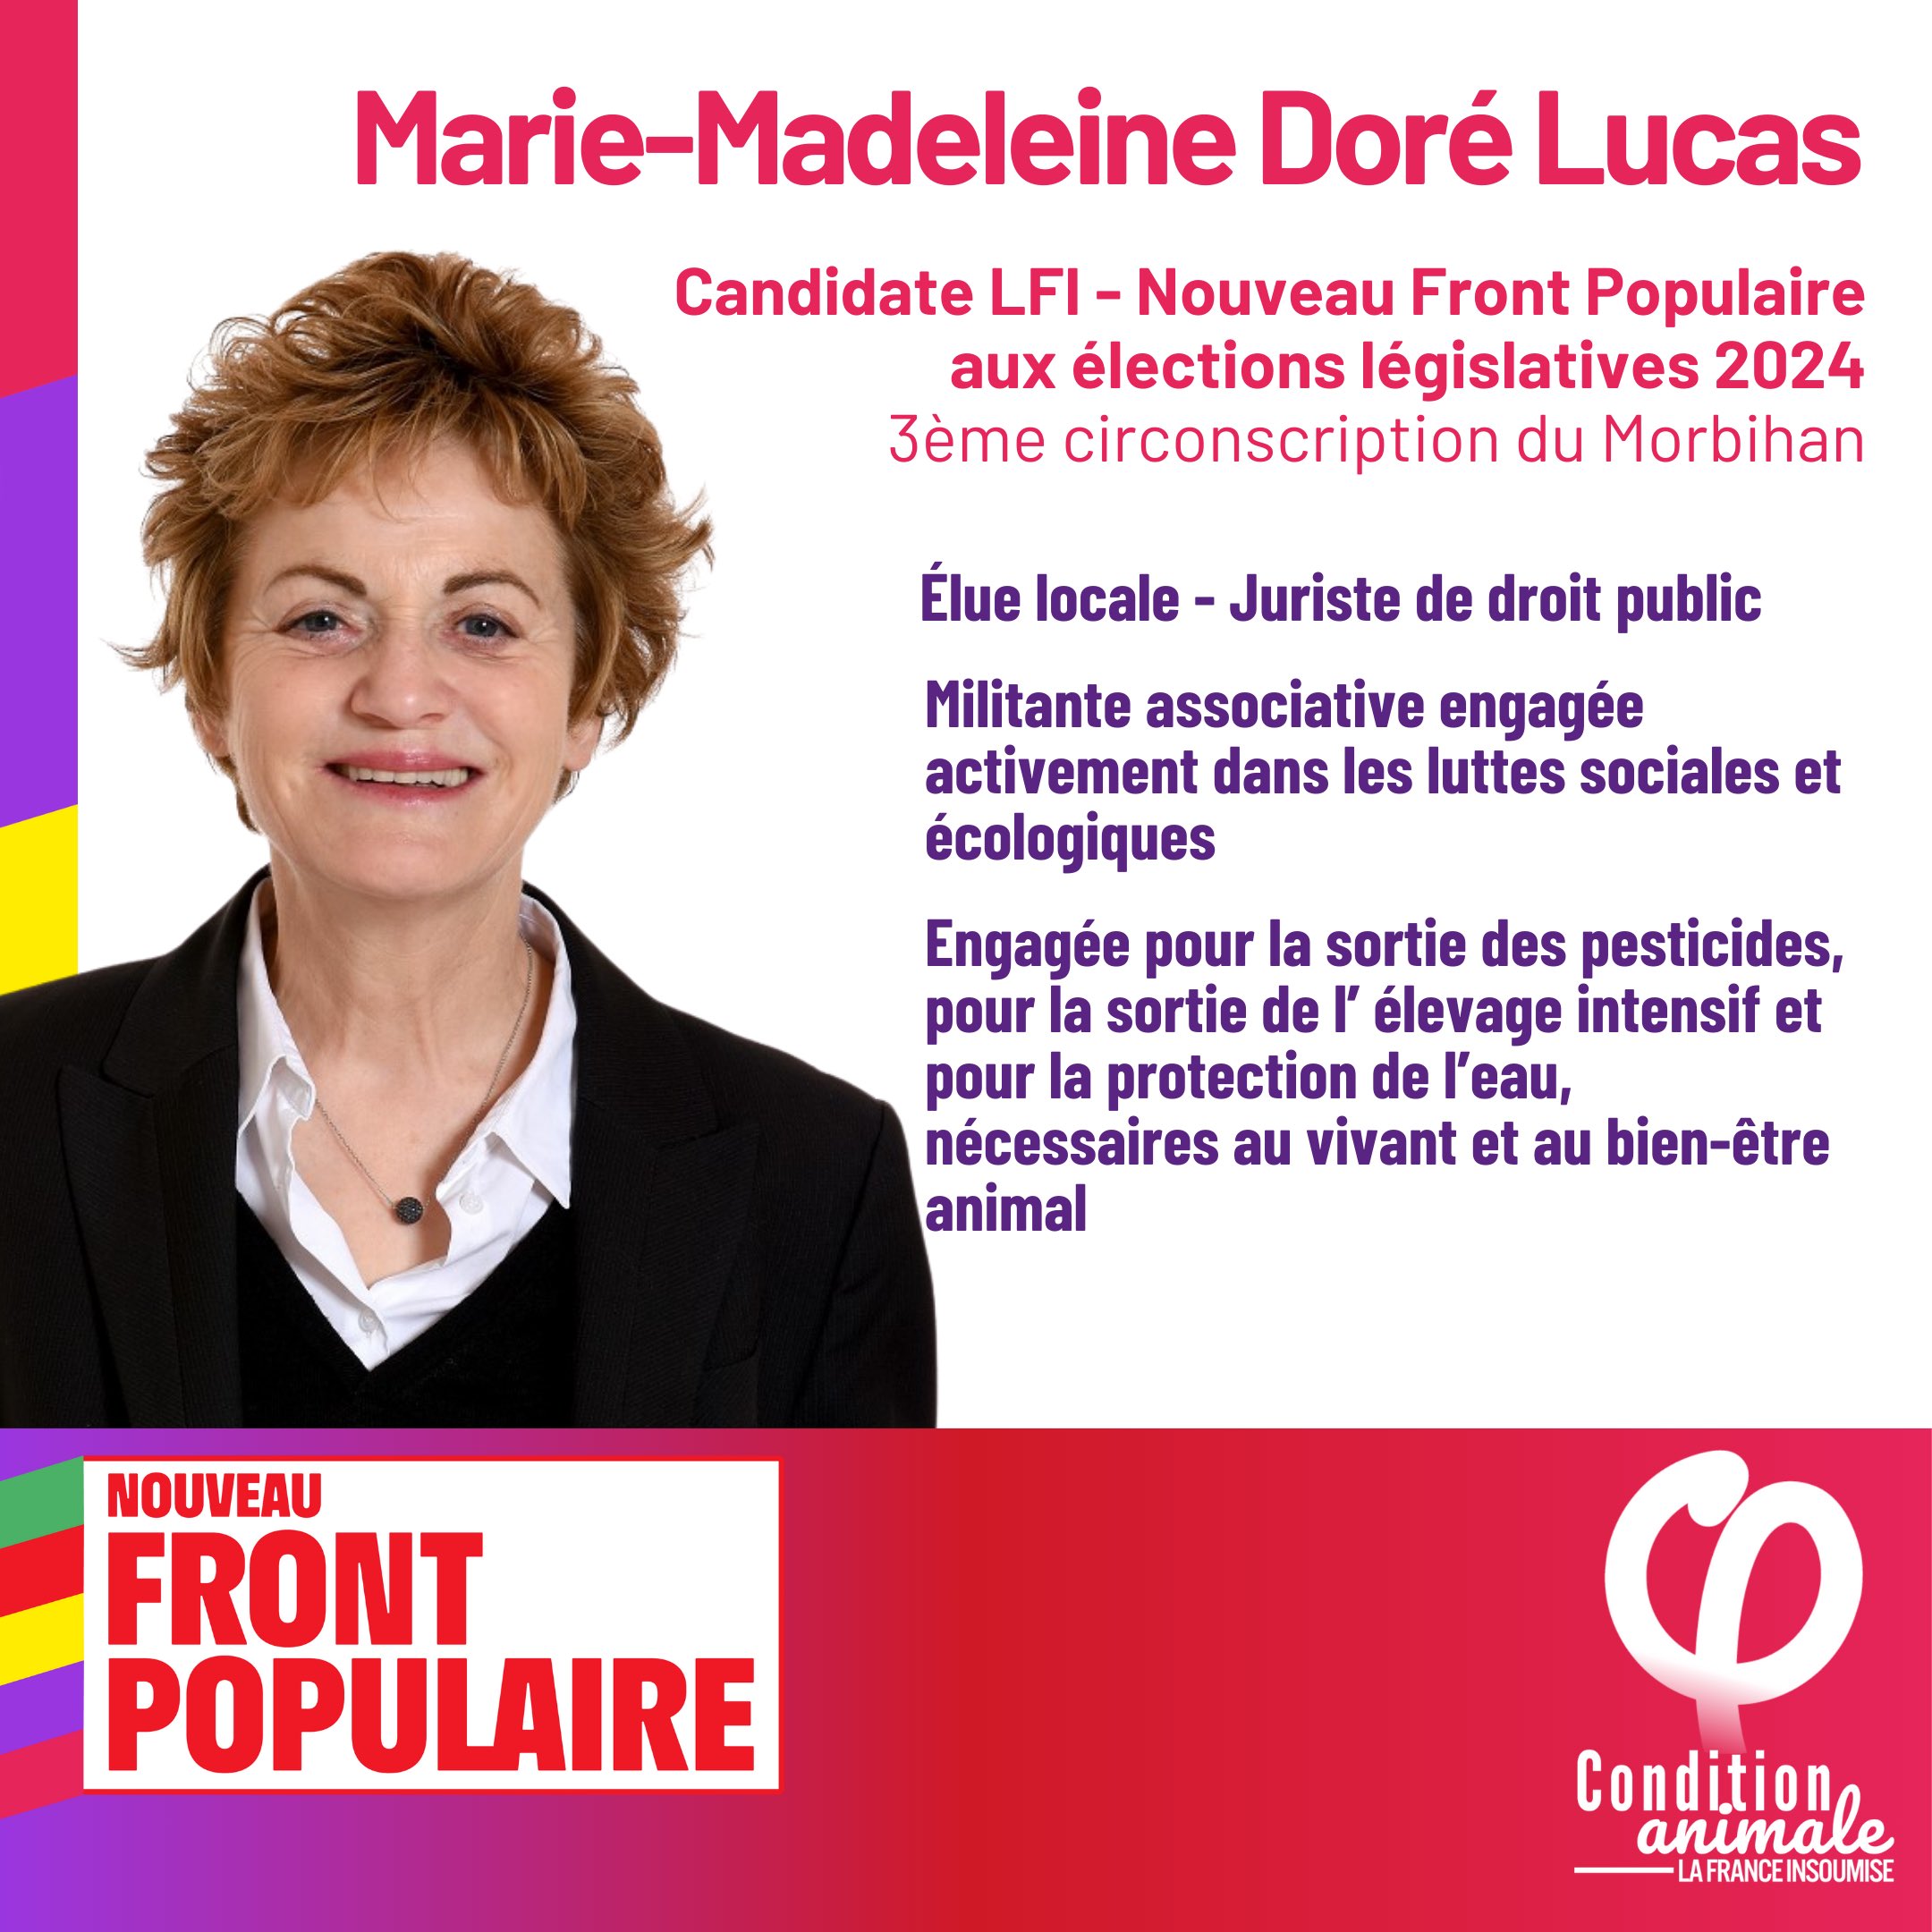 Marie-Madeleine DORE-LUCAS candidate pour le Nouveau Front Populaire, 3ème circonscription du Morbihan